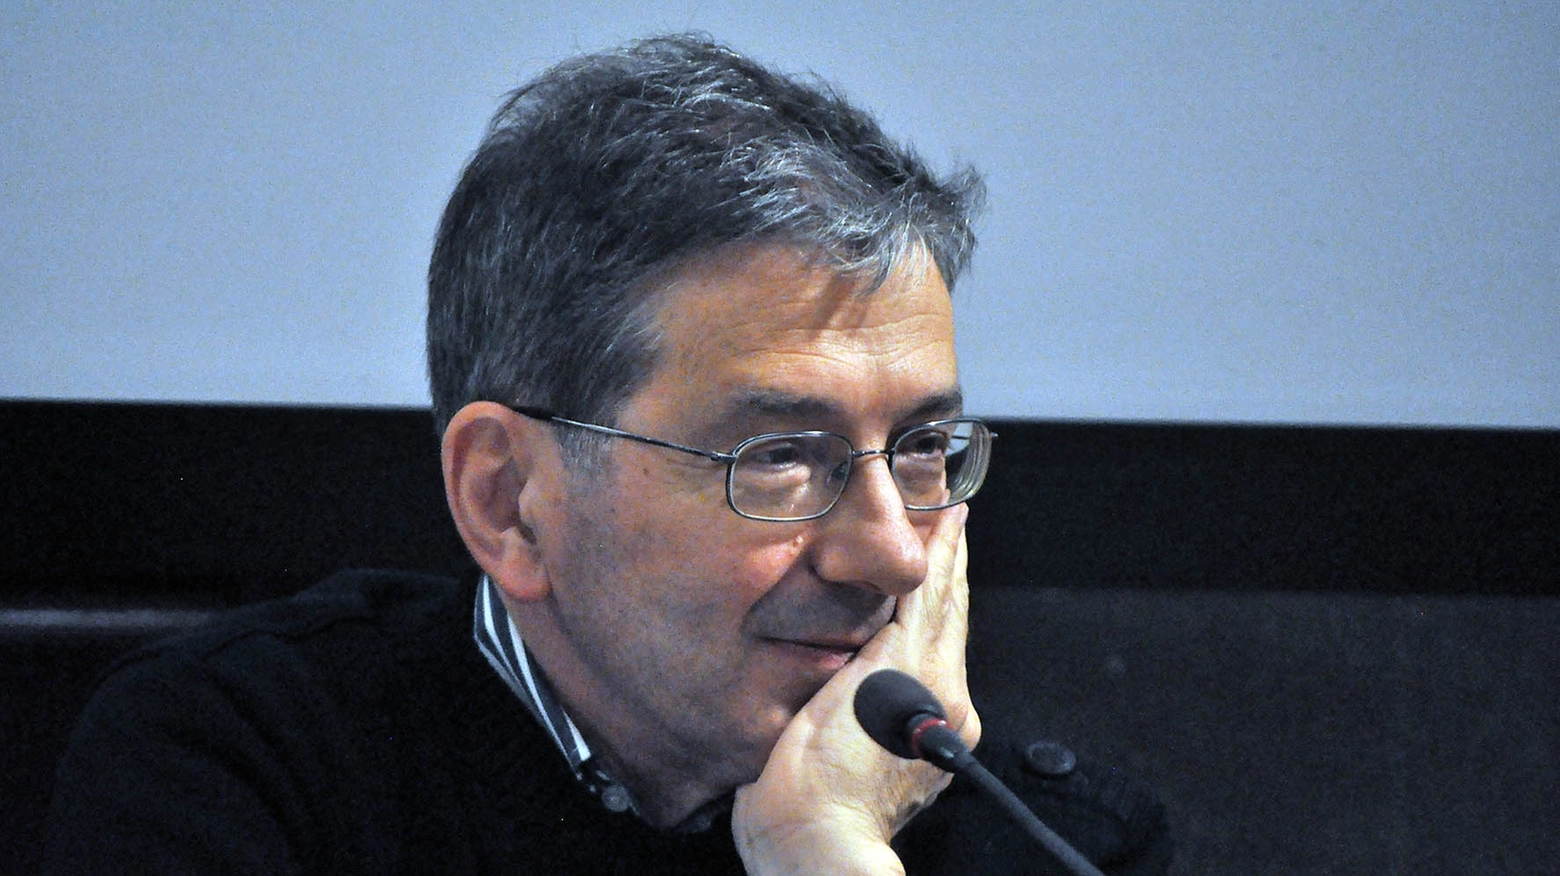 Giuseppe Mendicino